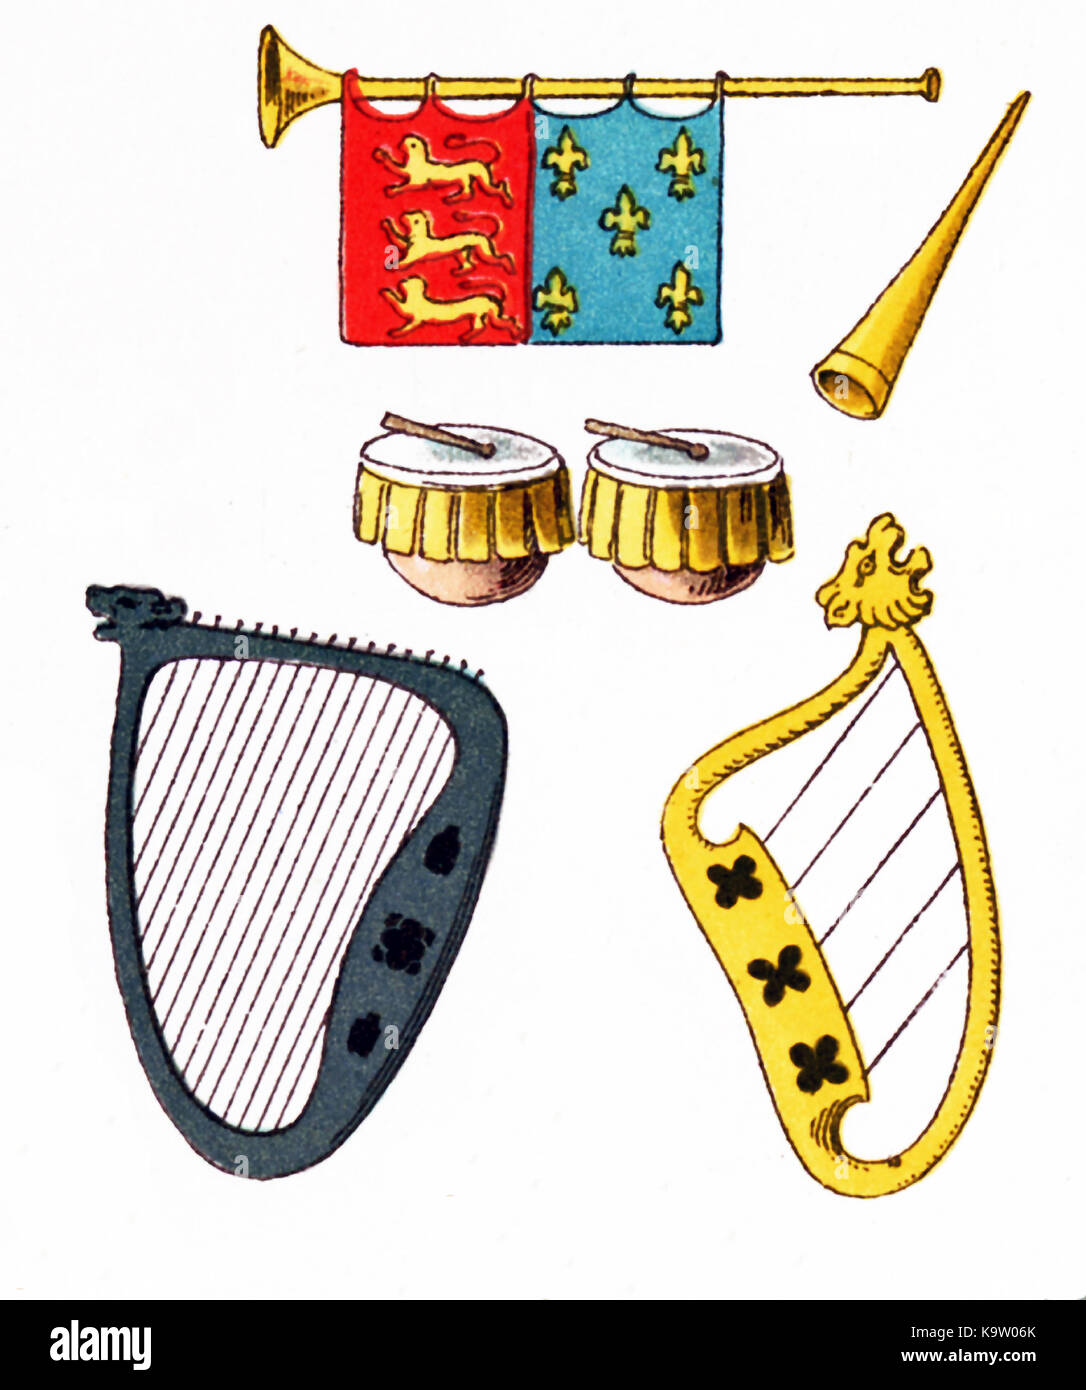 Les instruments de musique illustré ici date de l'Europe entre 1200 et 1300. En haut sont deux trompettes. Au milieu sont deux électrique batterie. Au bas sont deux harpes.Cette illustration dates pour 1882. Banque D'Images